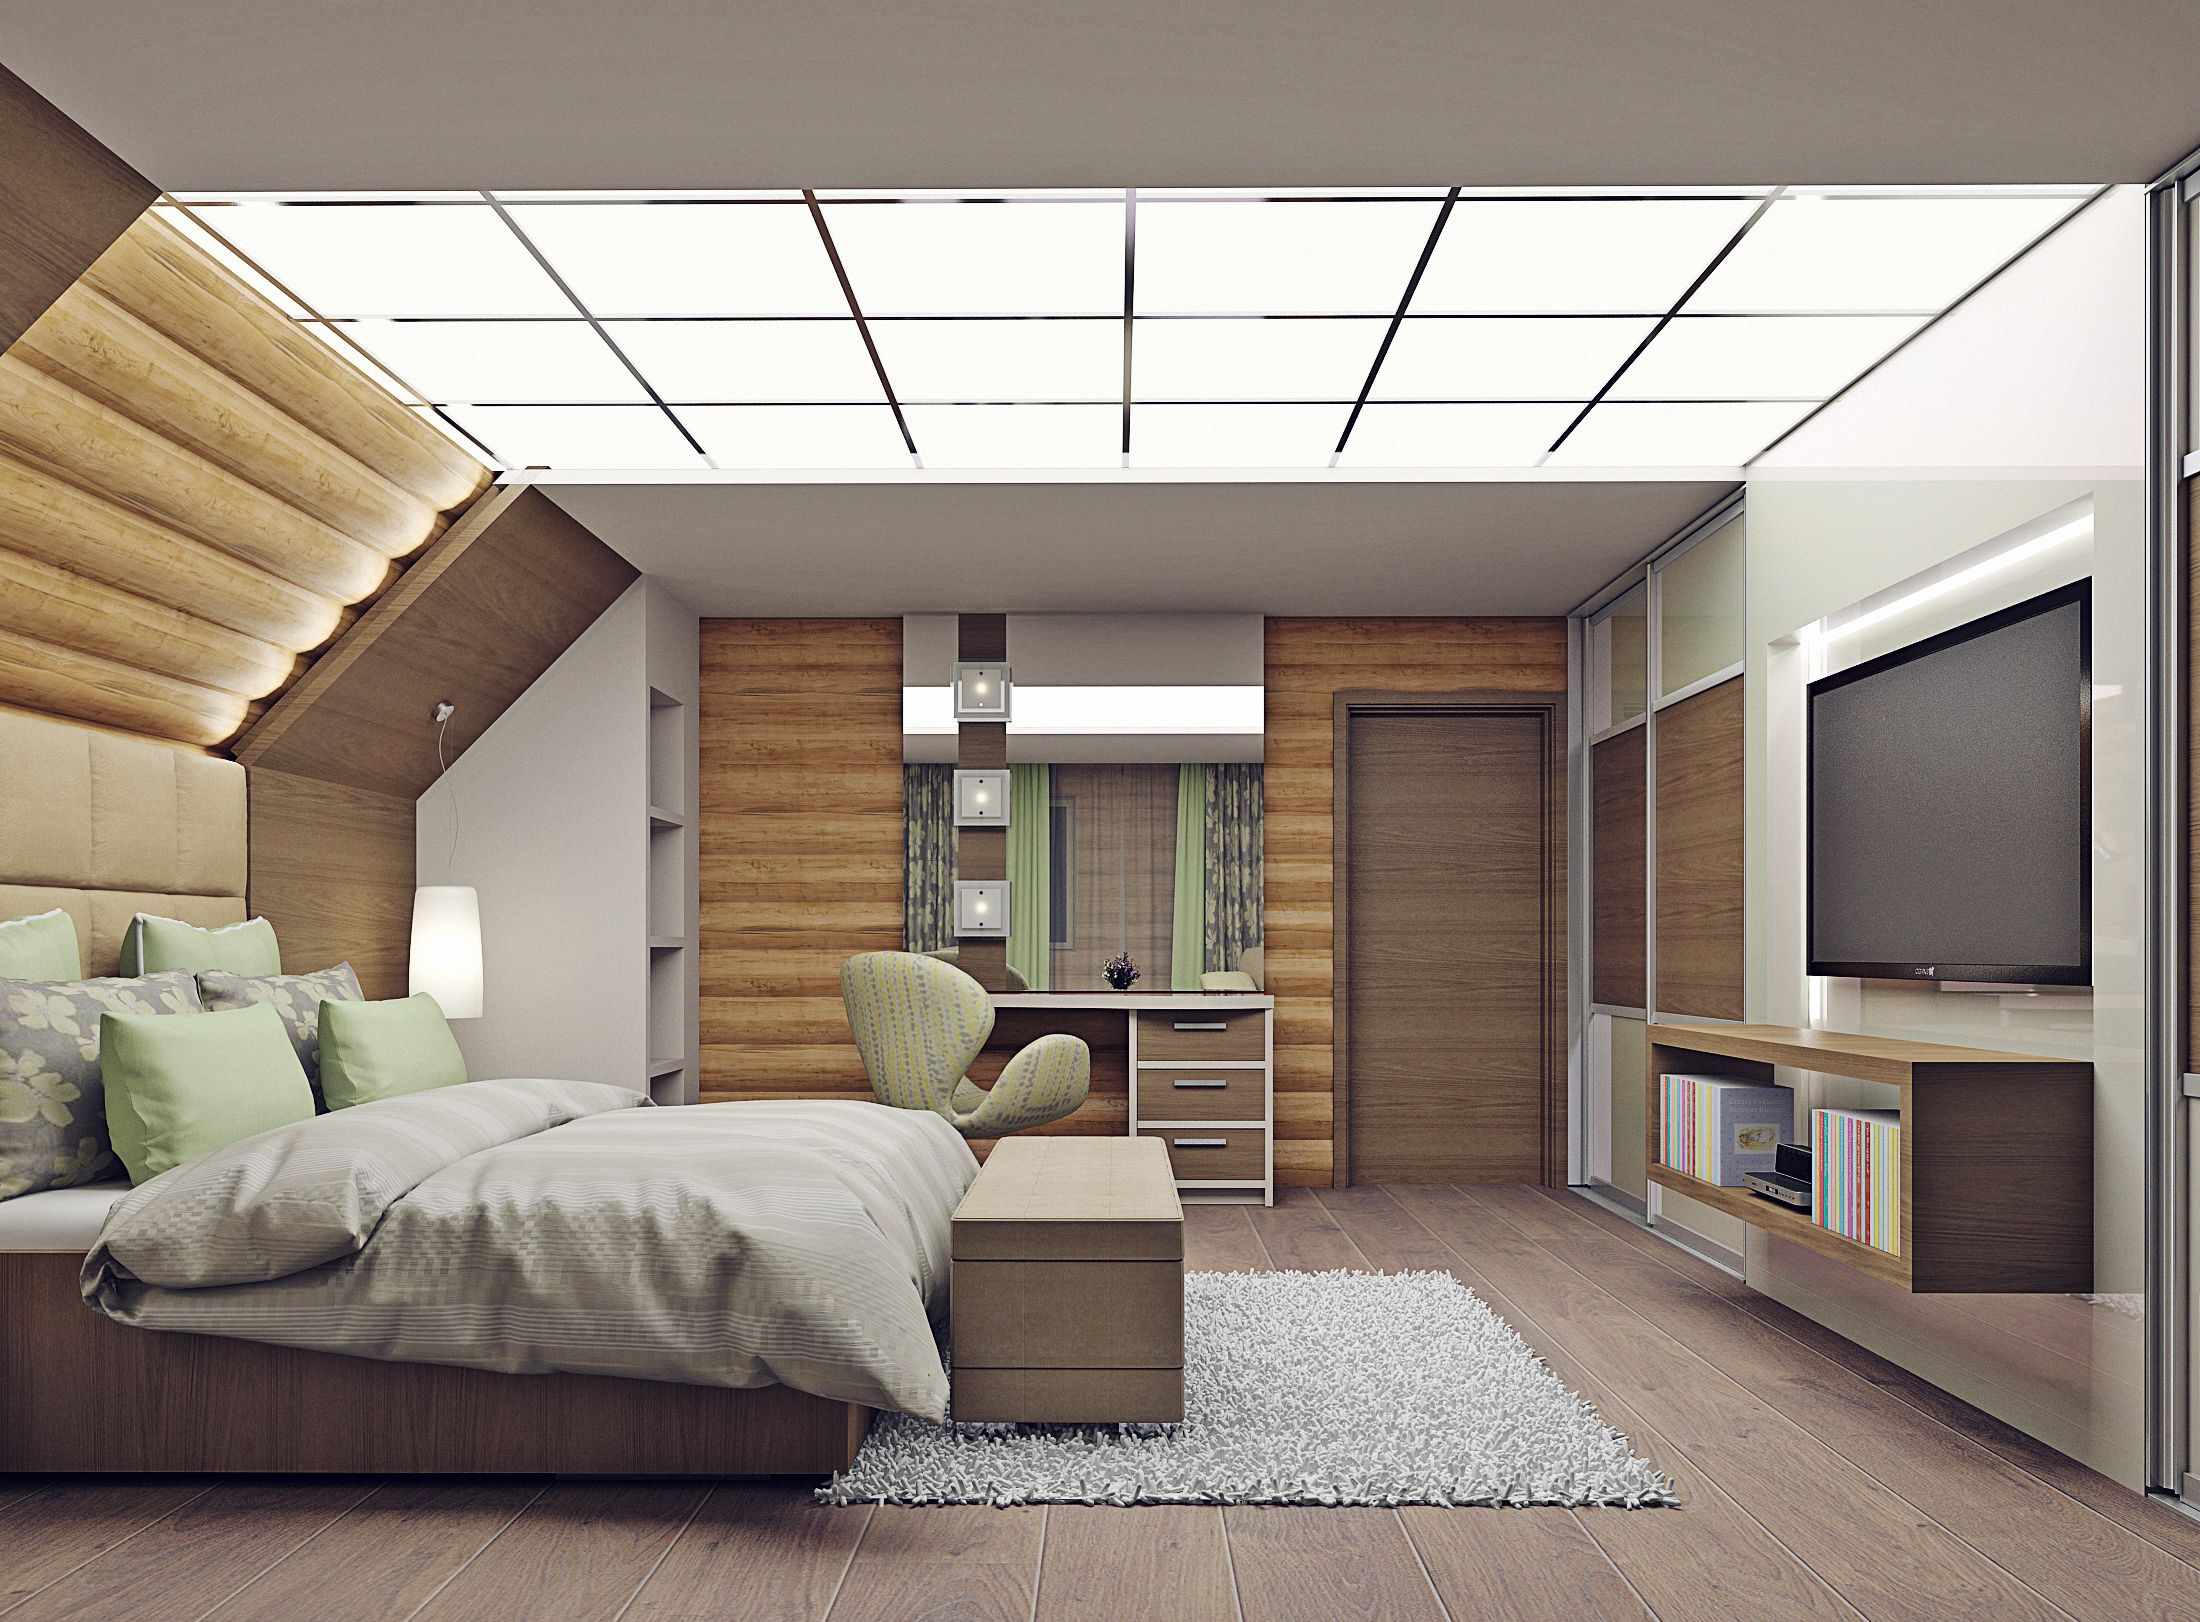 البديل من تصميم مشرق لغرفة النوم في العلية